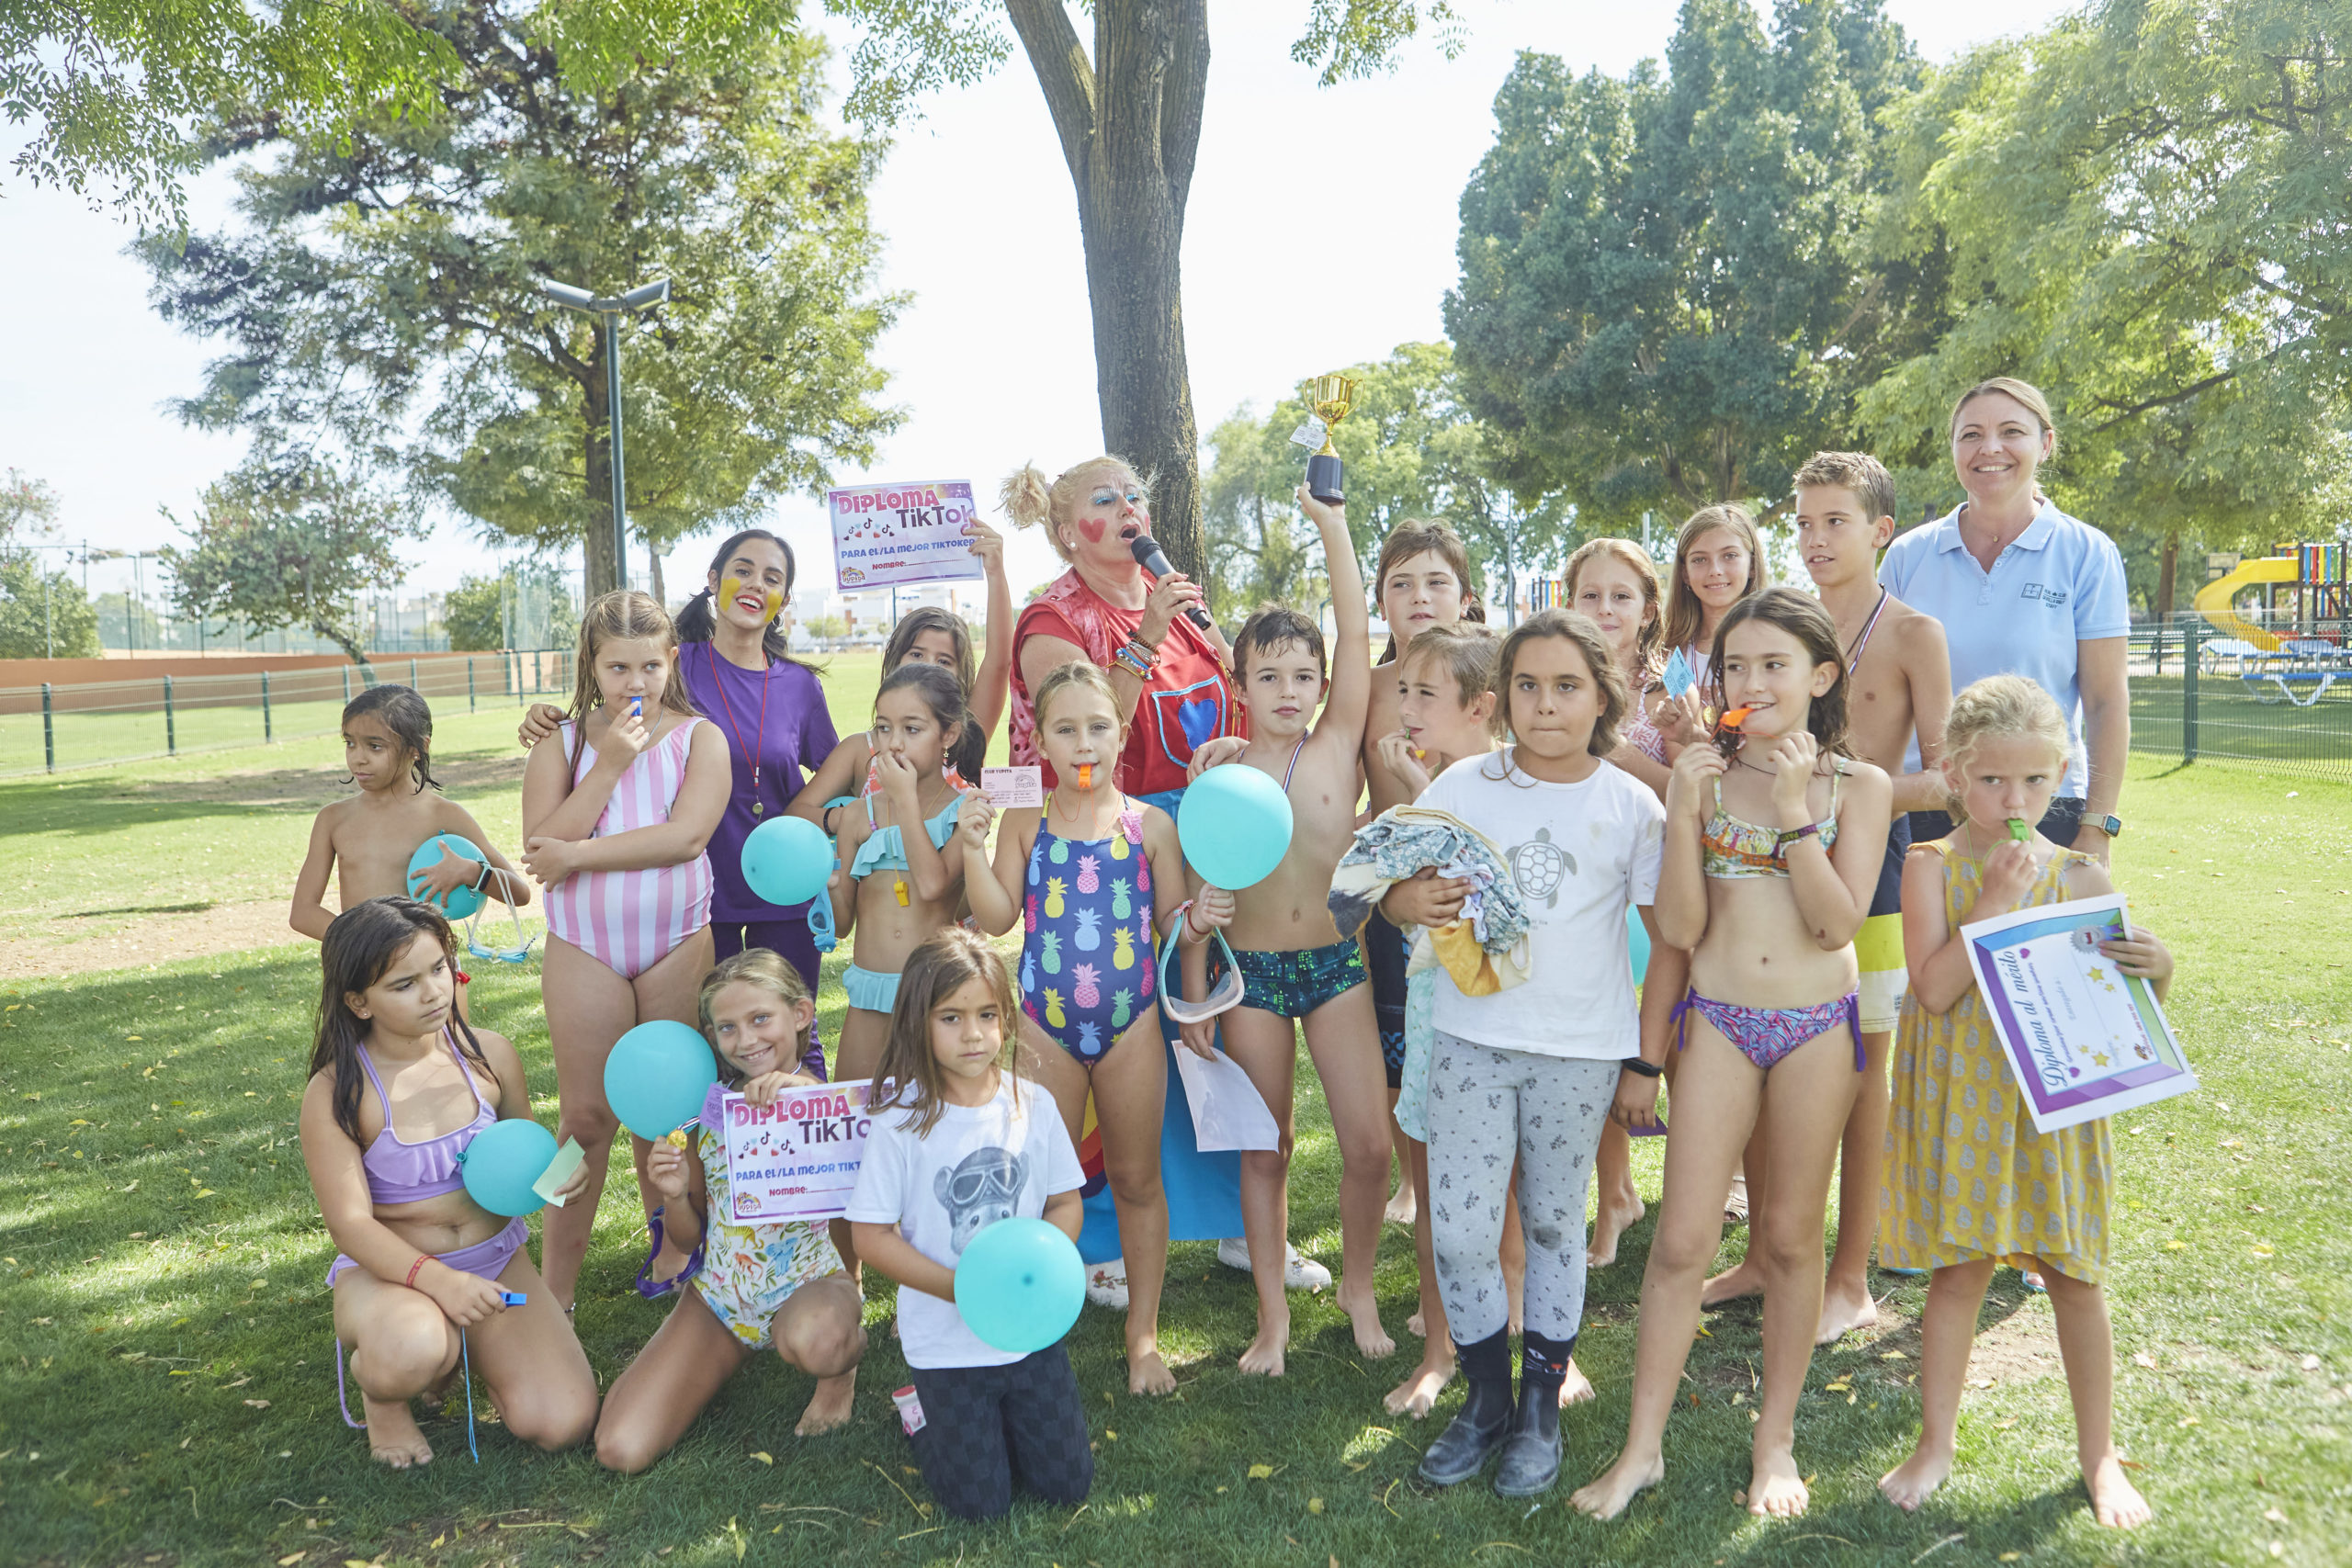 Fiesta cierre de piscinas: Gymkana con Yupita y sorteo de regalos